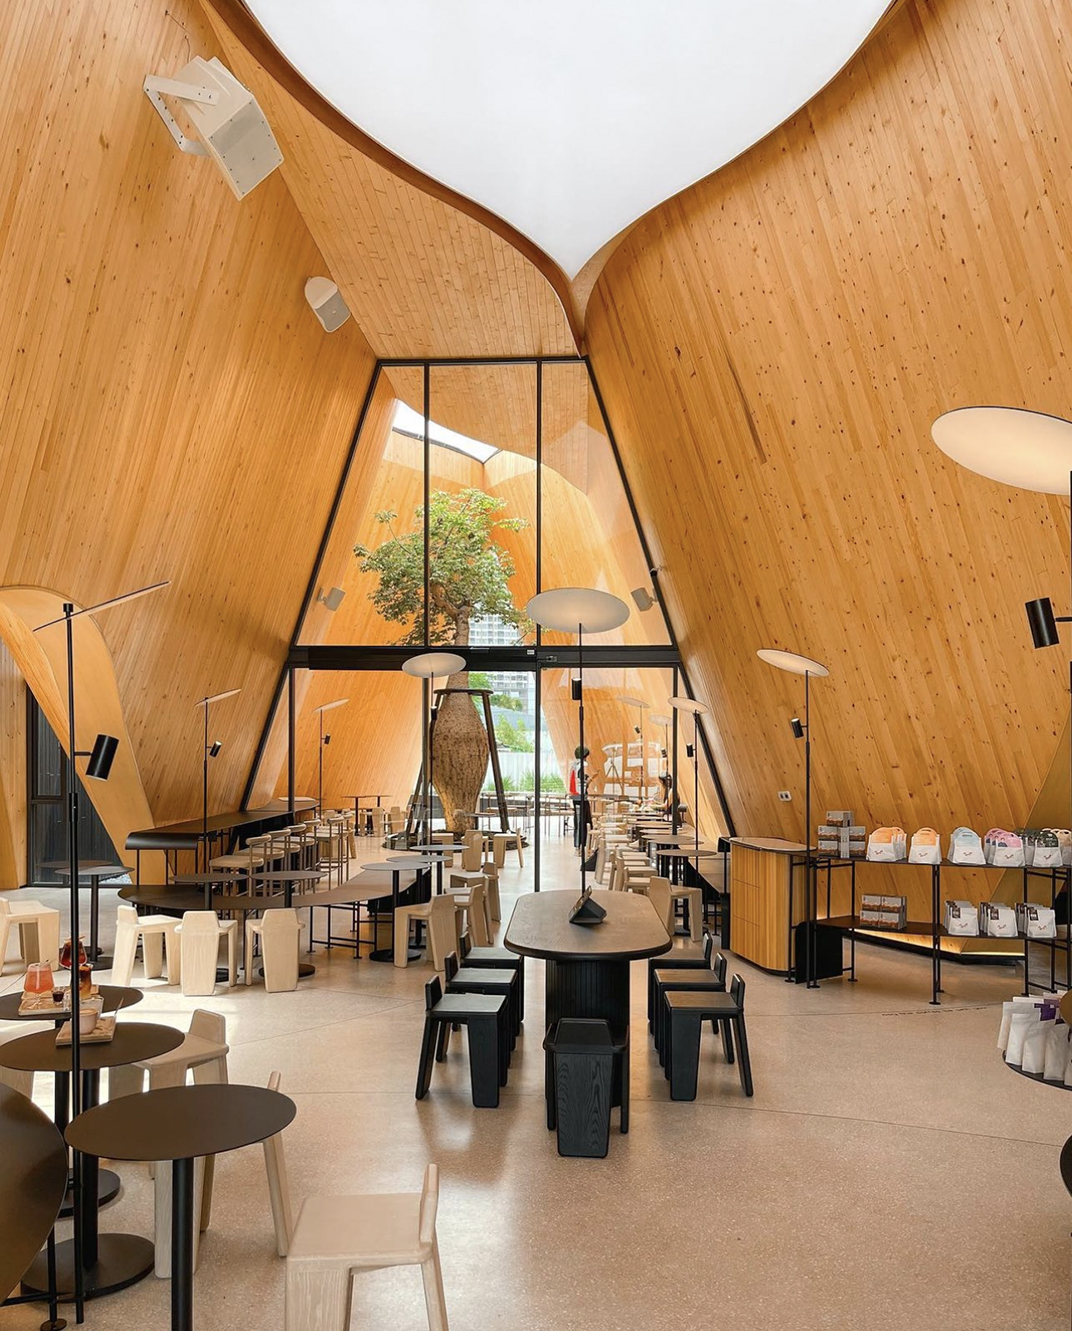 现代日式风格的咖啡馆建筑设计 泰国 北京 上海 珠海 广州 武汉 杭州 佛山 香港 澳门 logo设计 vi设计 空间设计